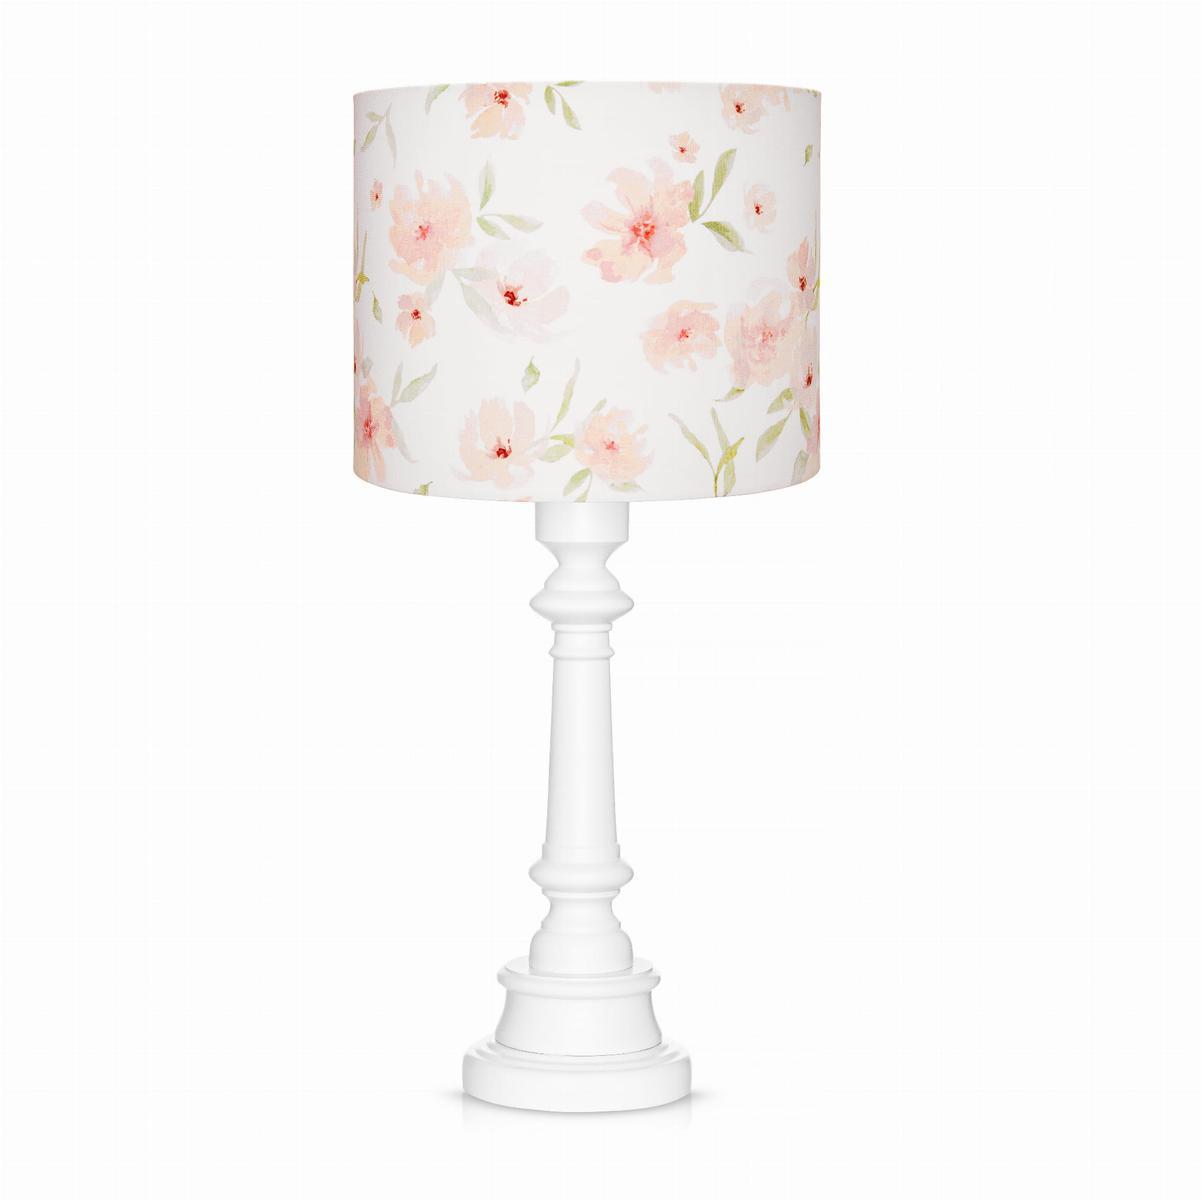 Lampa stołowa BLOSSOM 25x25x55 cm biała w kwiaty drewno białe 0 Full Screen